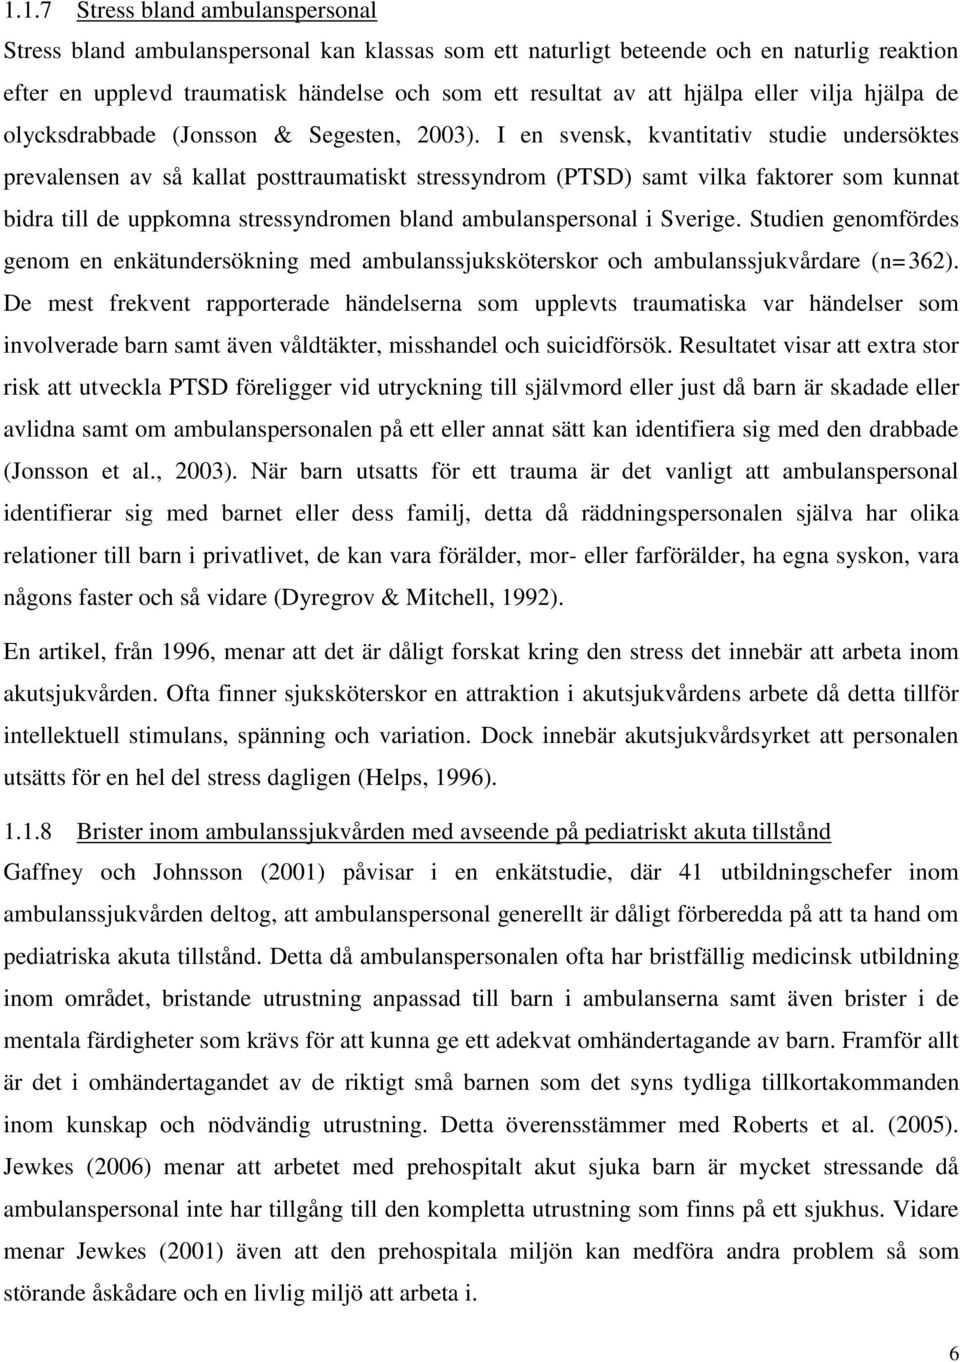 I en svensk, kvantitativ studie undersöktes prevalensen av så kallat posttraumatiskt stressyndrom (PTSD) samt vilka faktorer som kunnat bidra till de uppkomna stressyndromen bland ambulanspersonal i